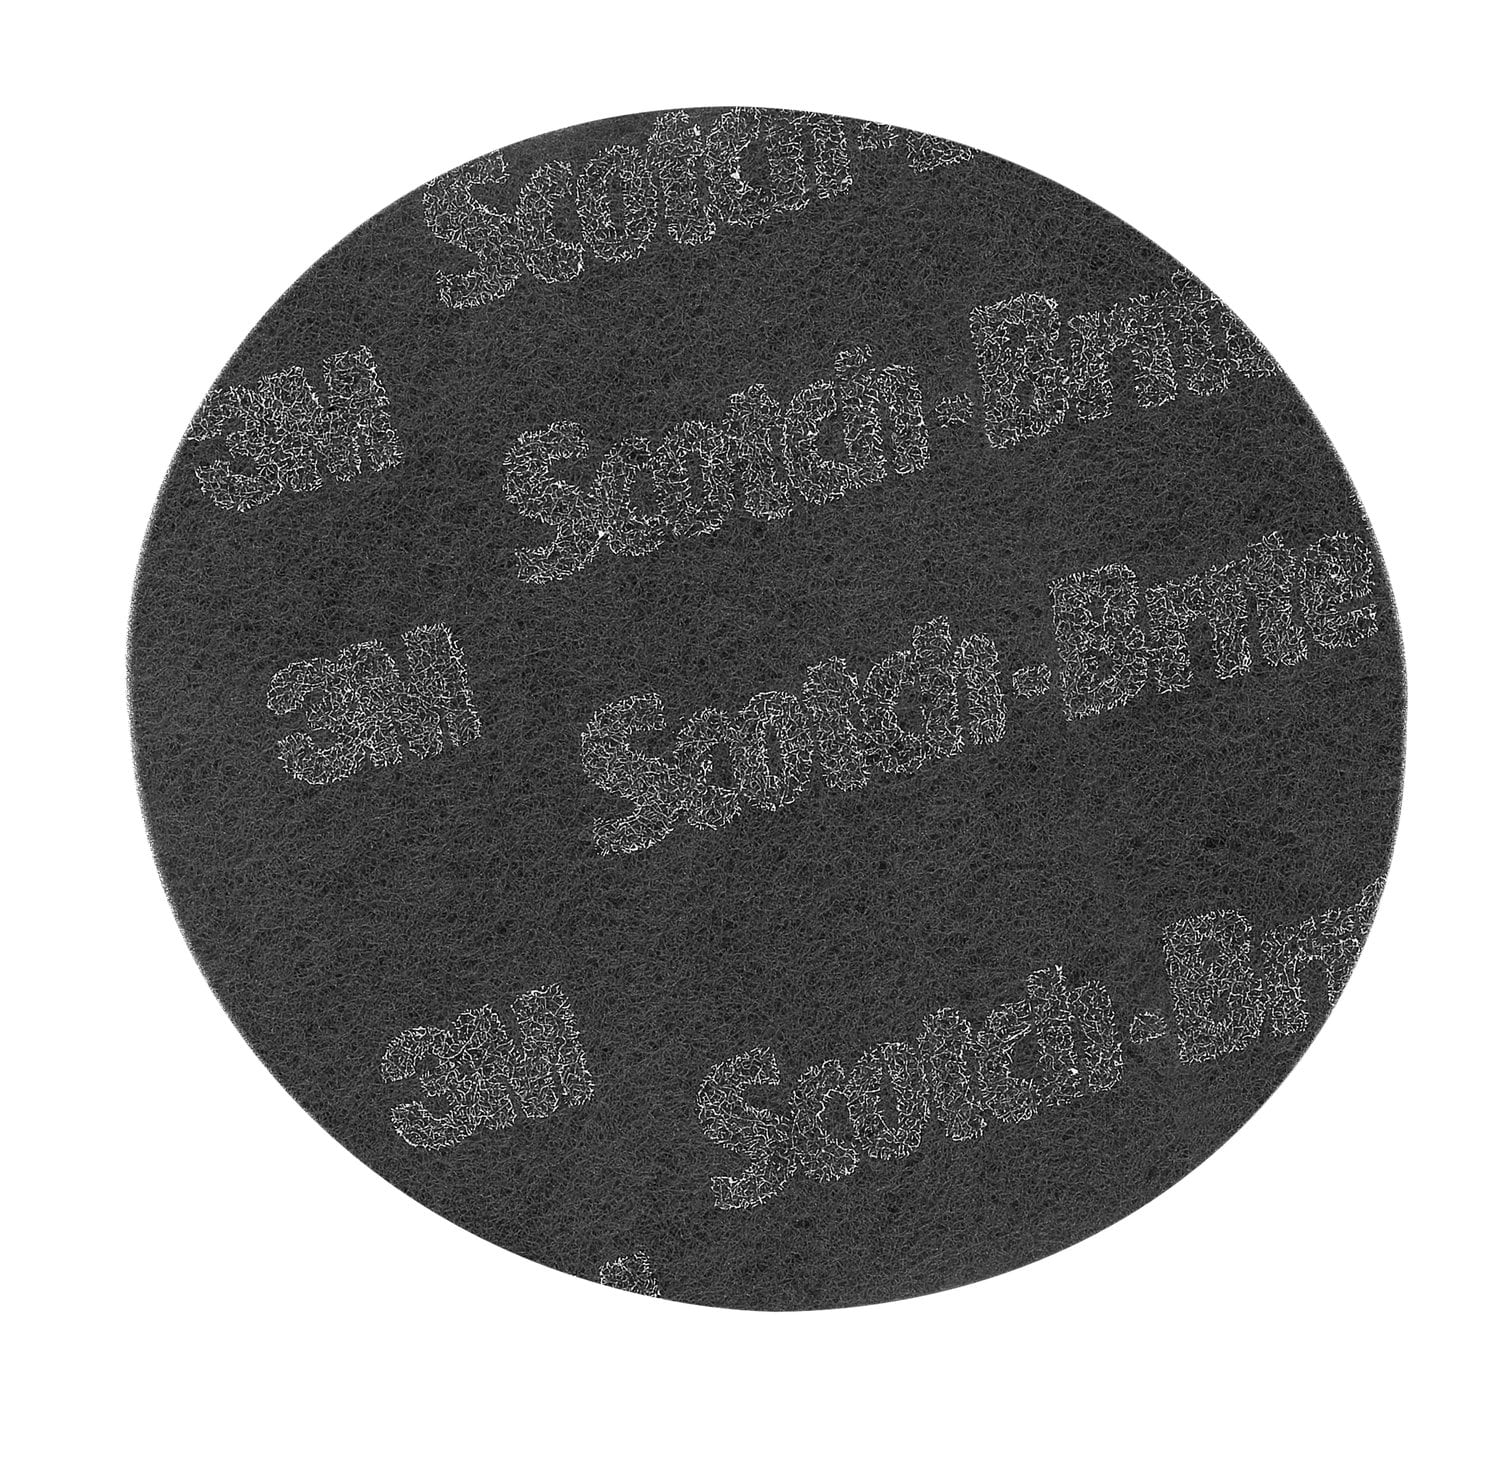 7010300876 - Scotch-Brite 7448 PRO Disc, PO-DC, SiC Ultra Fine, 5 in x NH, 100
ea/Case